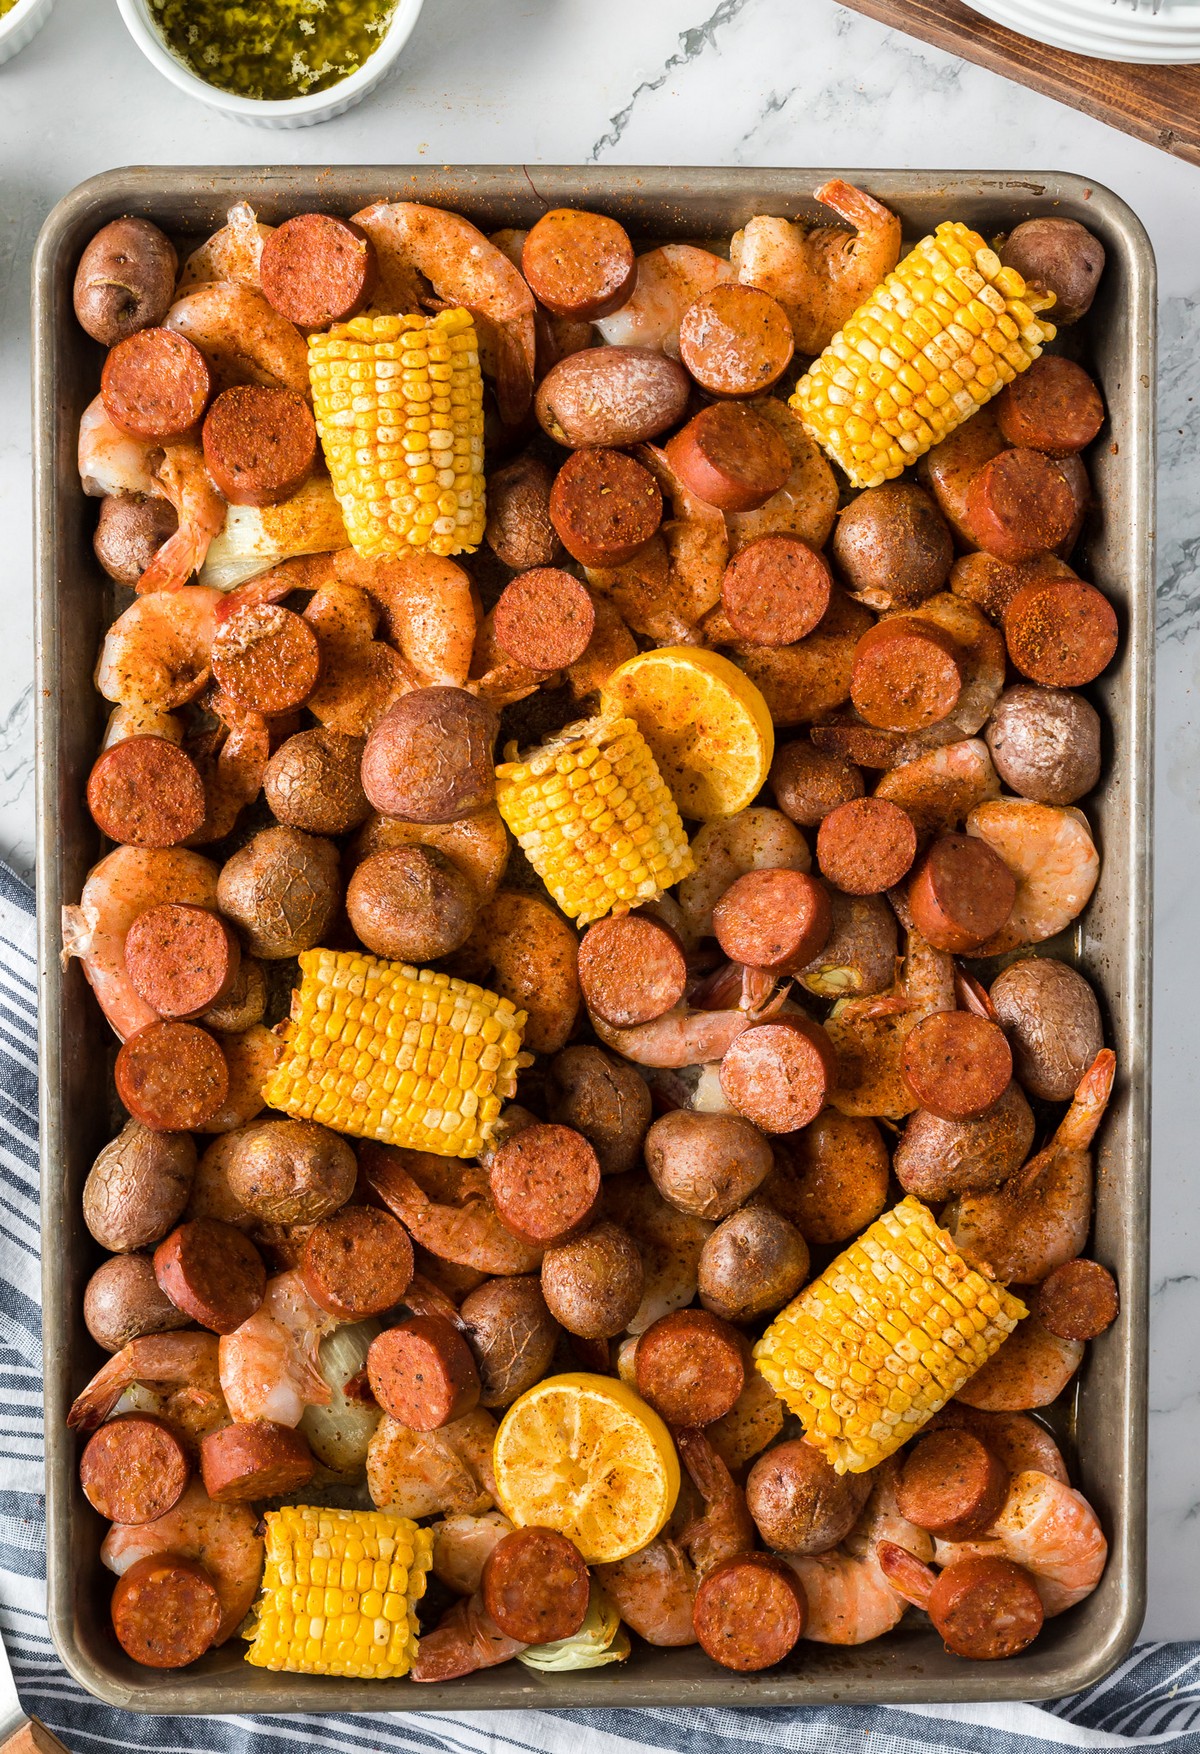 sheet pan of shrimp corn cobs sausage and potatoes.